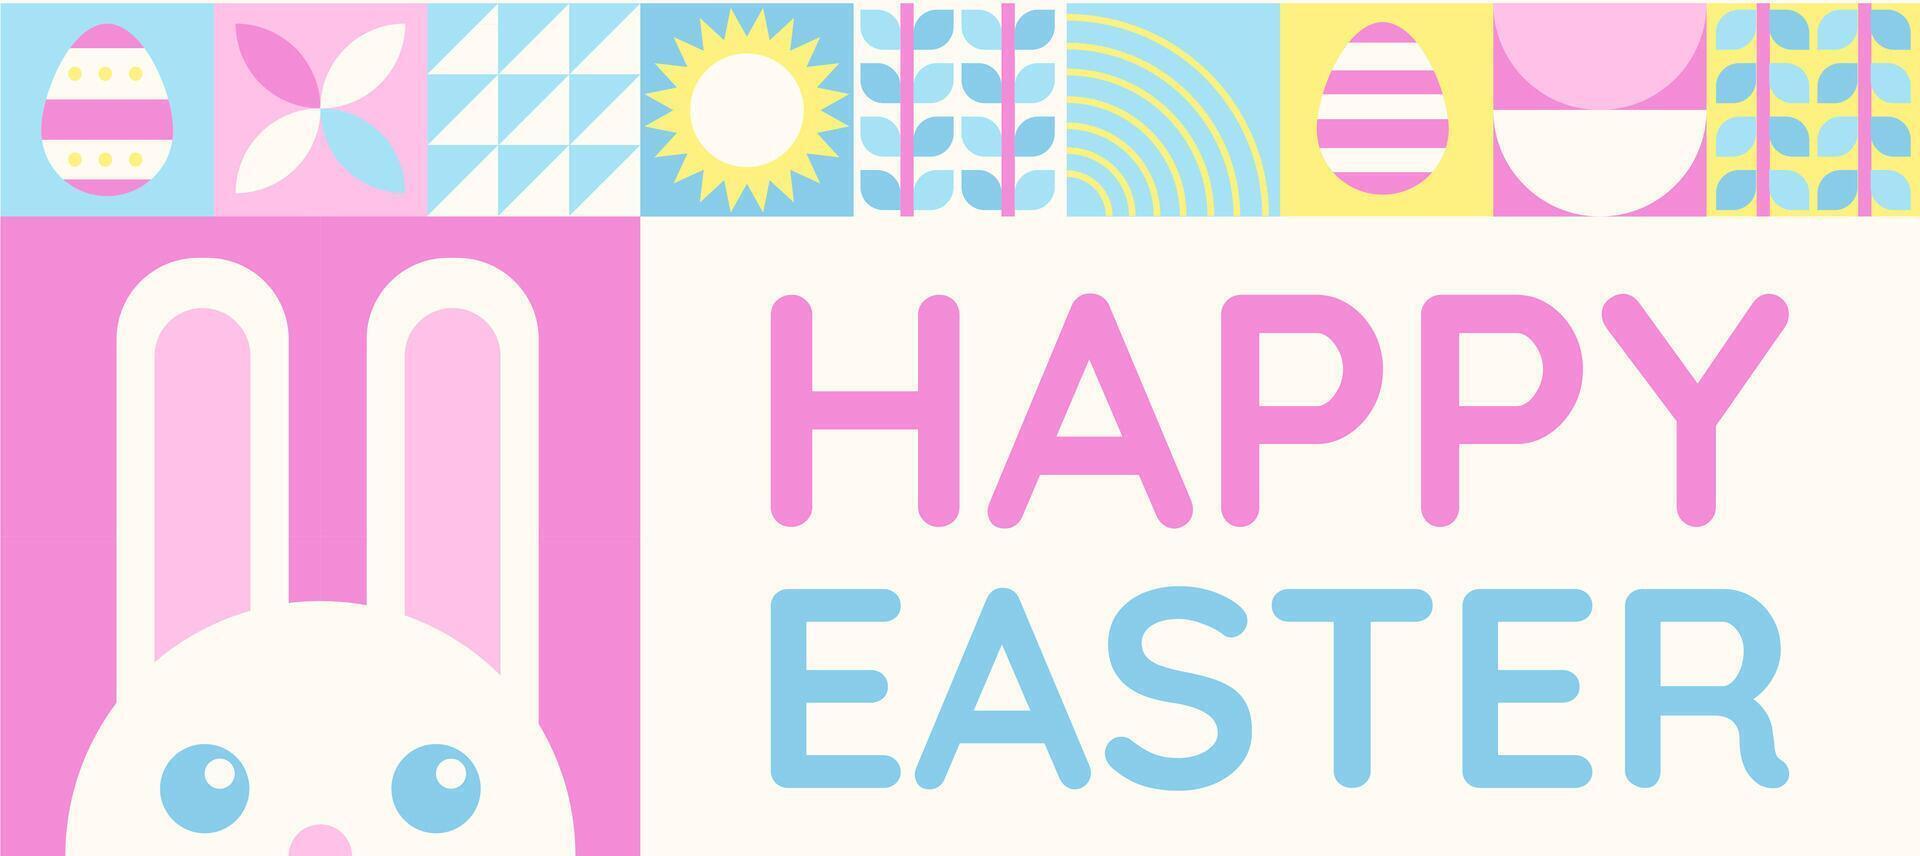 contento Pasqua bandiera con piatto grafico elementi e simboli di il vacanza, decorato uova e coniglietto, impianti disegni. vettore illustrazione con testo saluto.